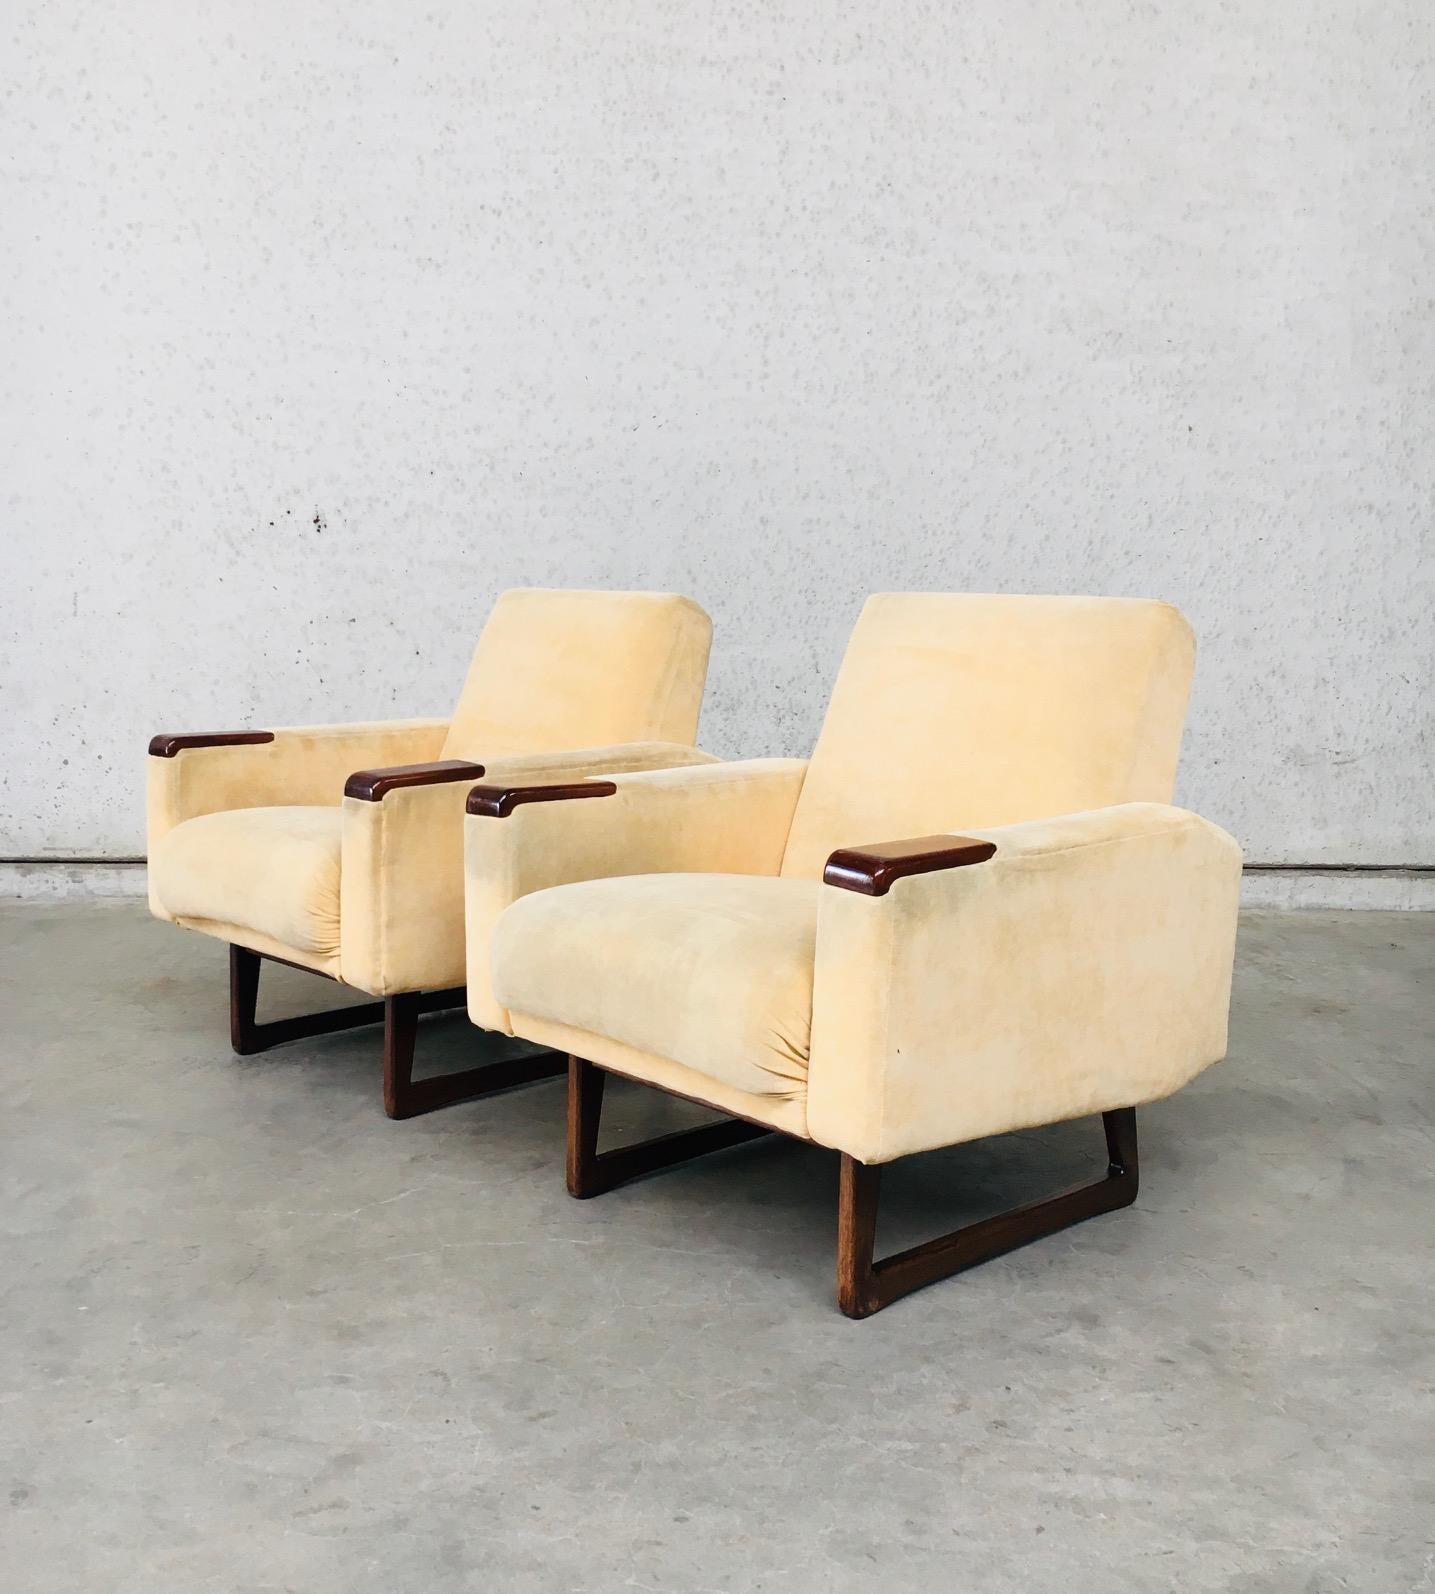 Vintage Midcentury Scandinavian Design Armchair set of 2, made in Denmark 1950's / 60's. Frabric en velours jaune pâle avec des accoudoirs en bois de teck (aspect) et une base de pieds en U en bois de teck (aspect). L'ensemble du fauteuil est